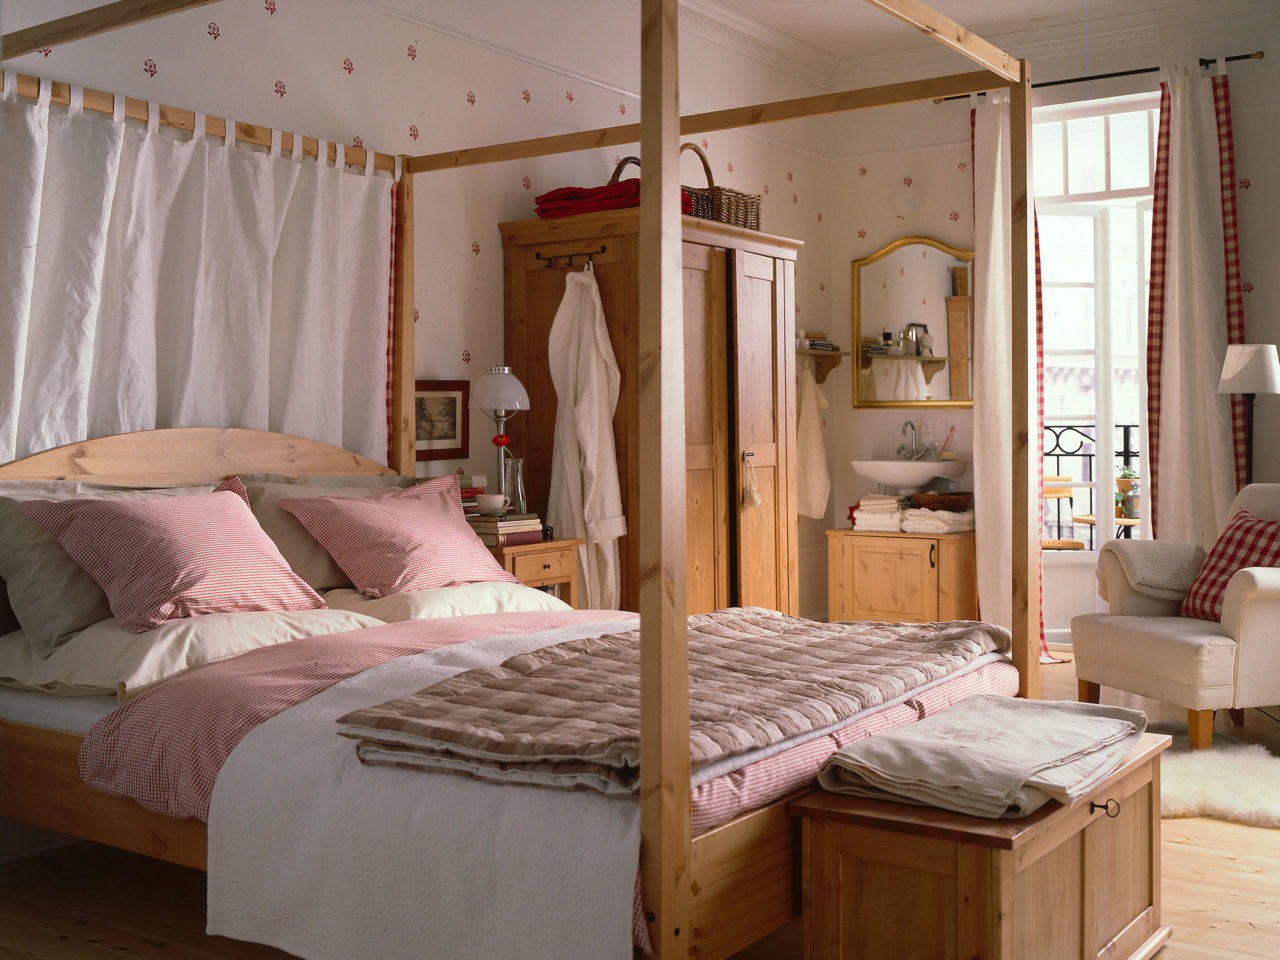 Ett sovrum med en dubbelsäng med stor, överbyggd sängram. Såväl säng som övriga möbler av modell MORGONDAL, i patinerat trä.